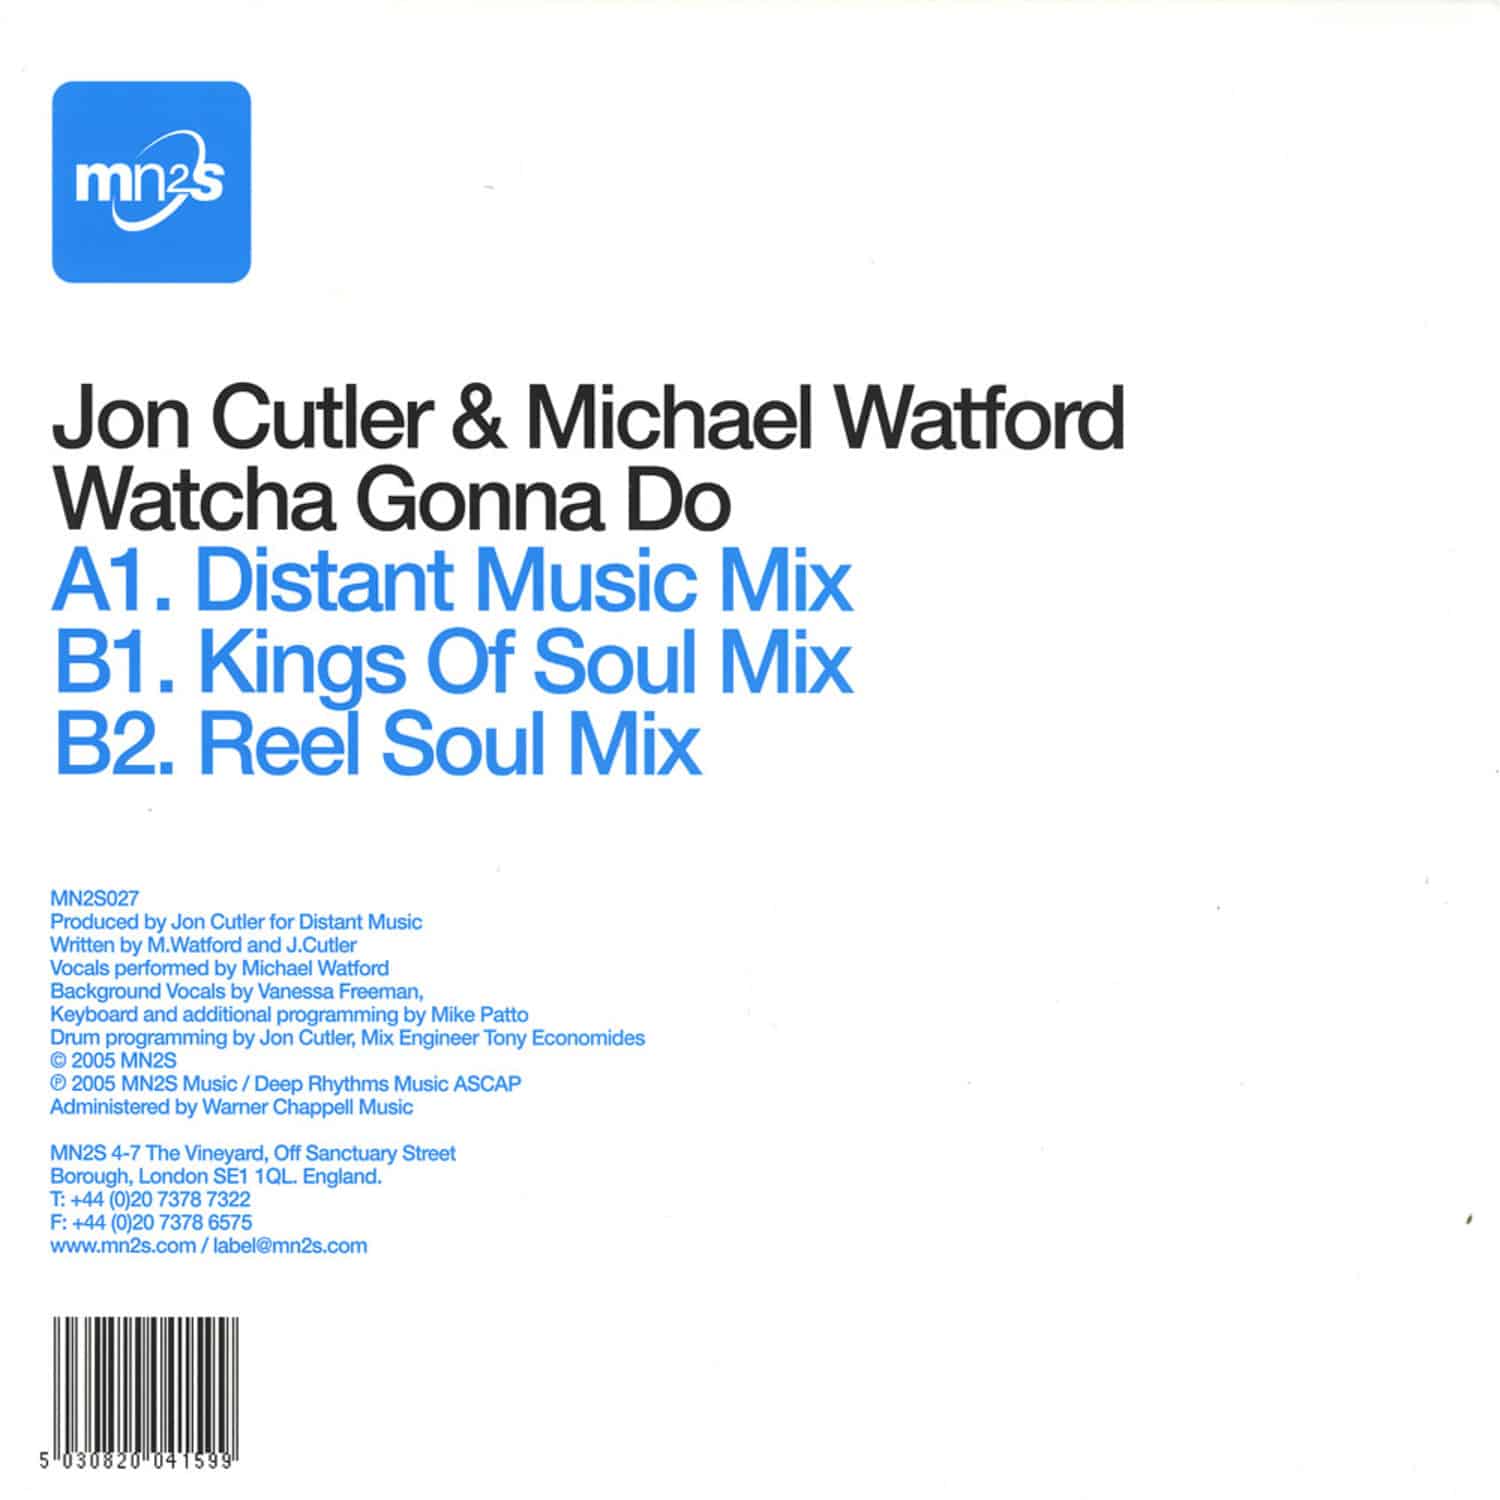 Jon Cutler & Michael Watford - WATCHA GONNA DO